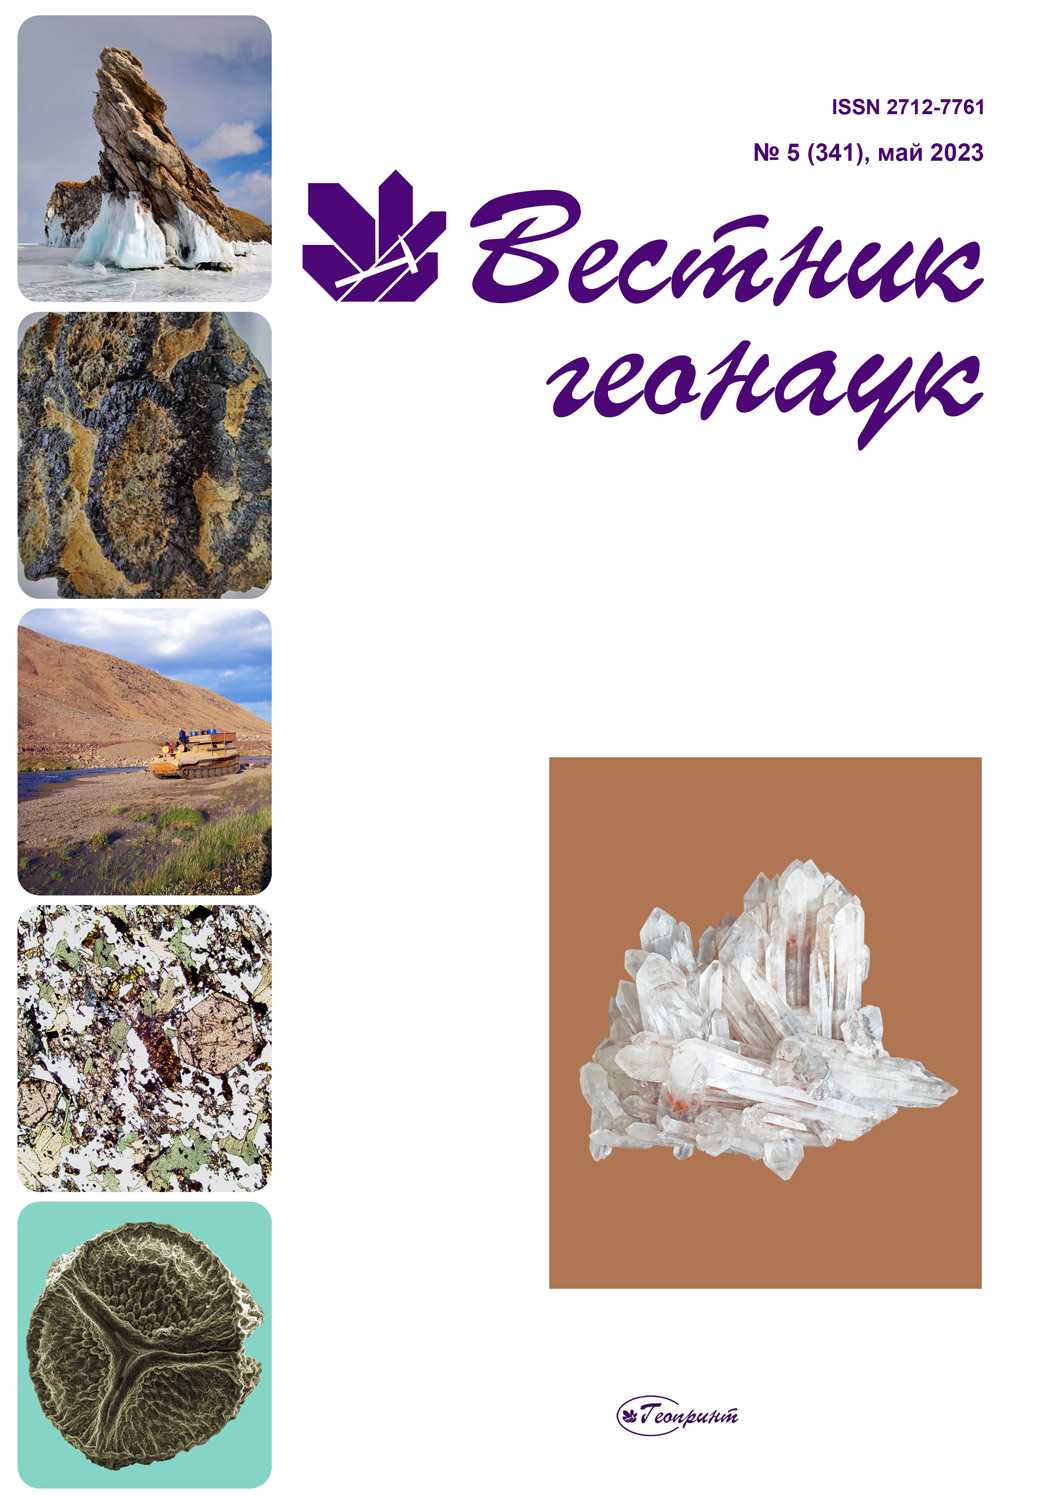             Личная библиотека палеонтолога Д. М. Раузер-Черноусовой
    